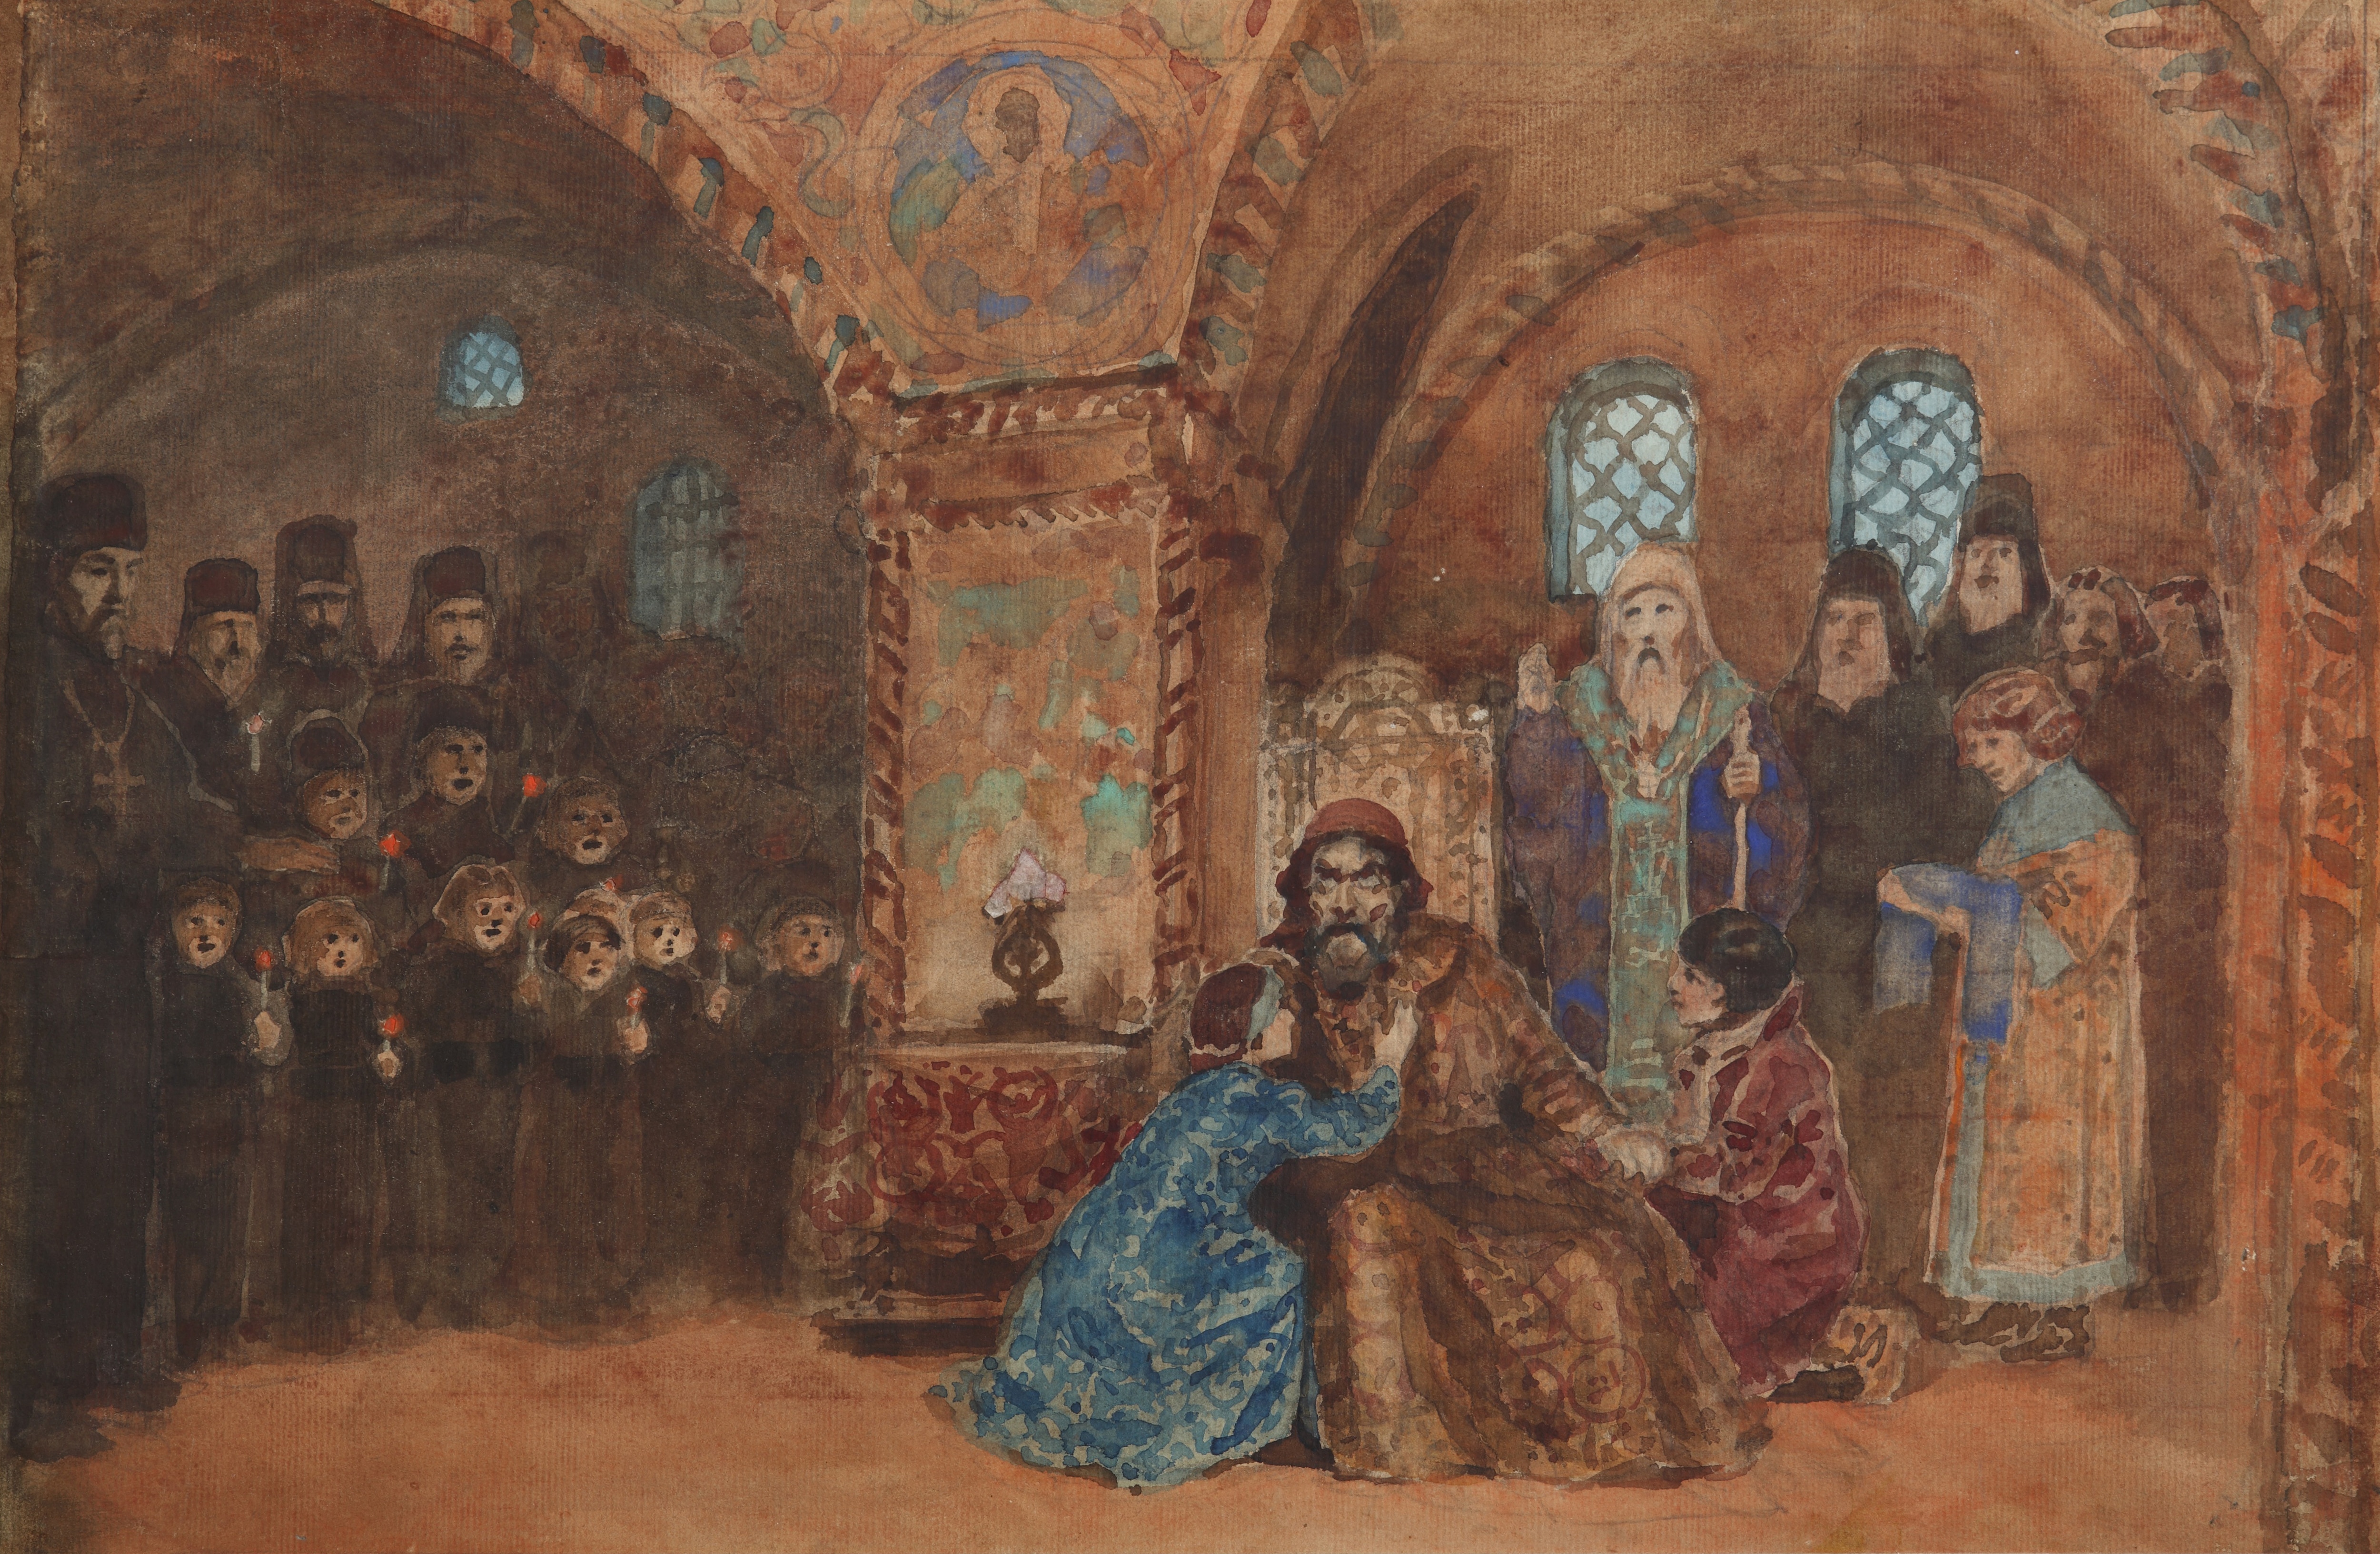 Bozzetto per una rappresentazione del "Boris Godunov". Artista: Vasili Dmitrievich Polenov (1844-1927).